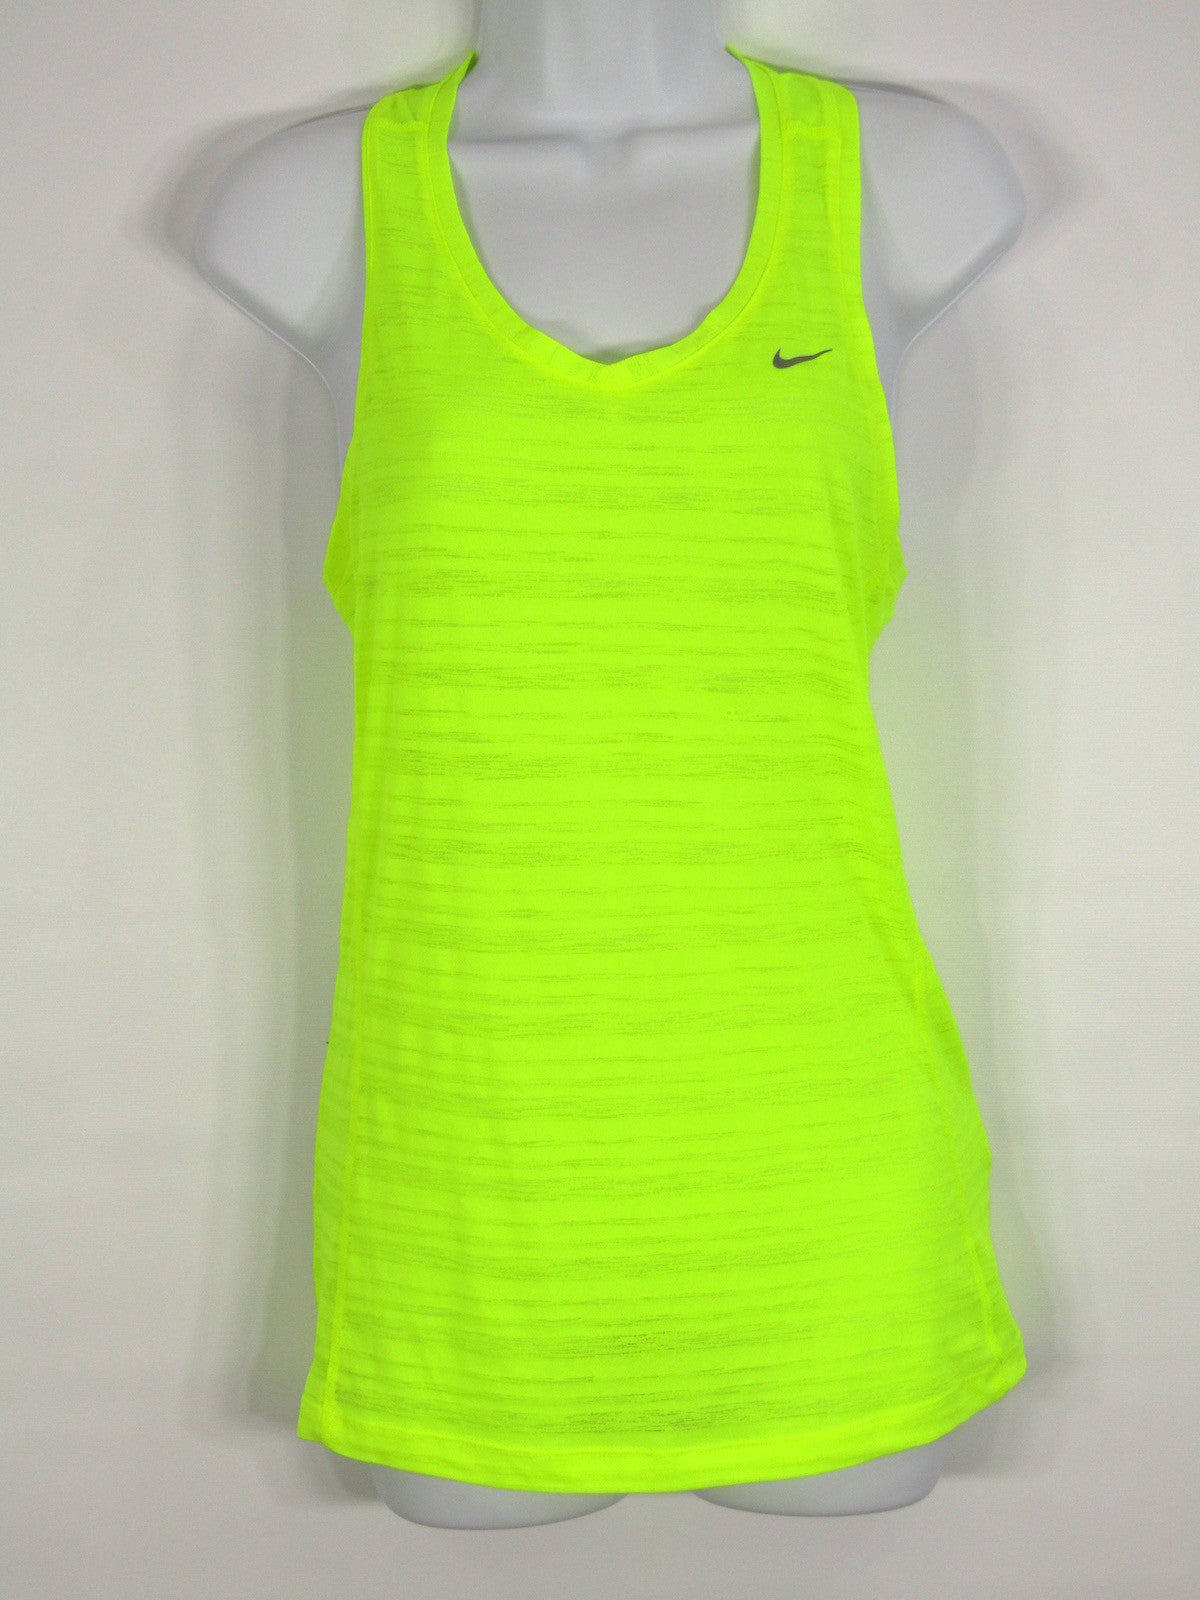 neon athletic wear